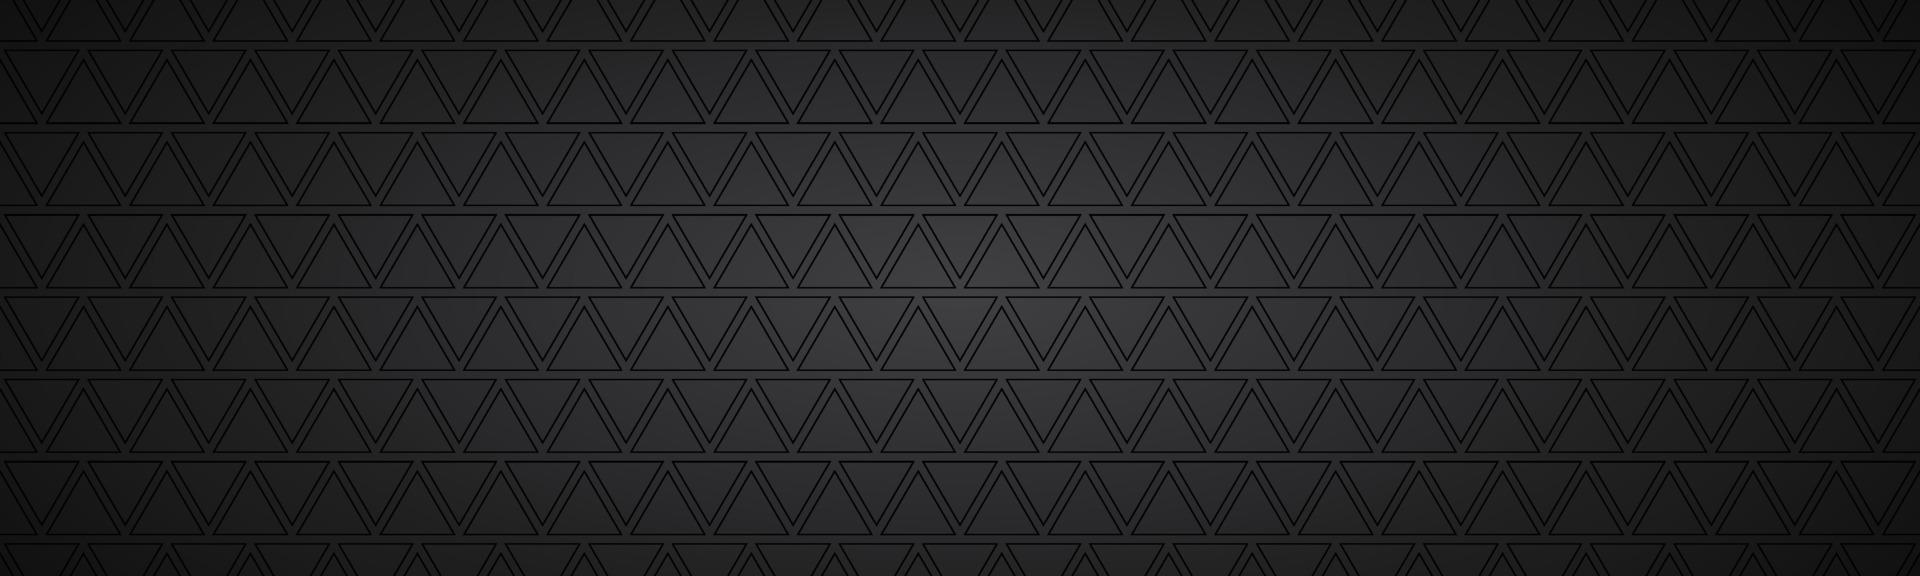 intestazione astratta nera con rettangoli. banner widescreen vettoriale moderno. semplice illustrazione di trama